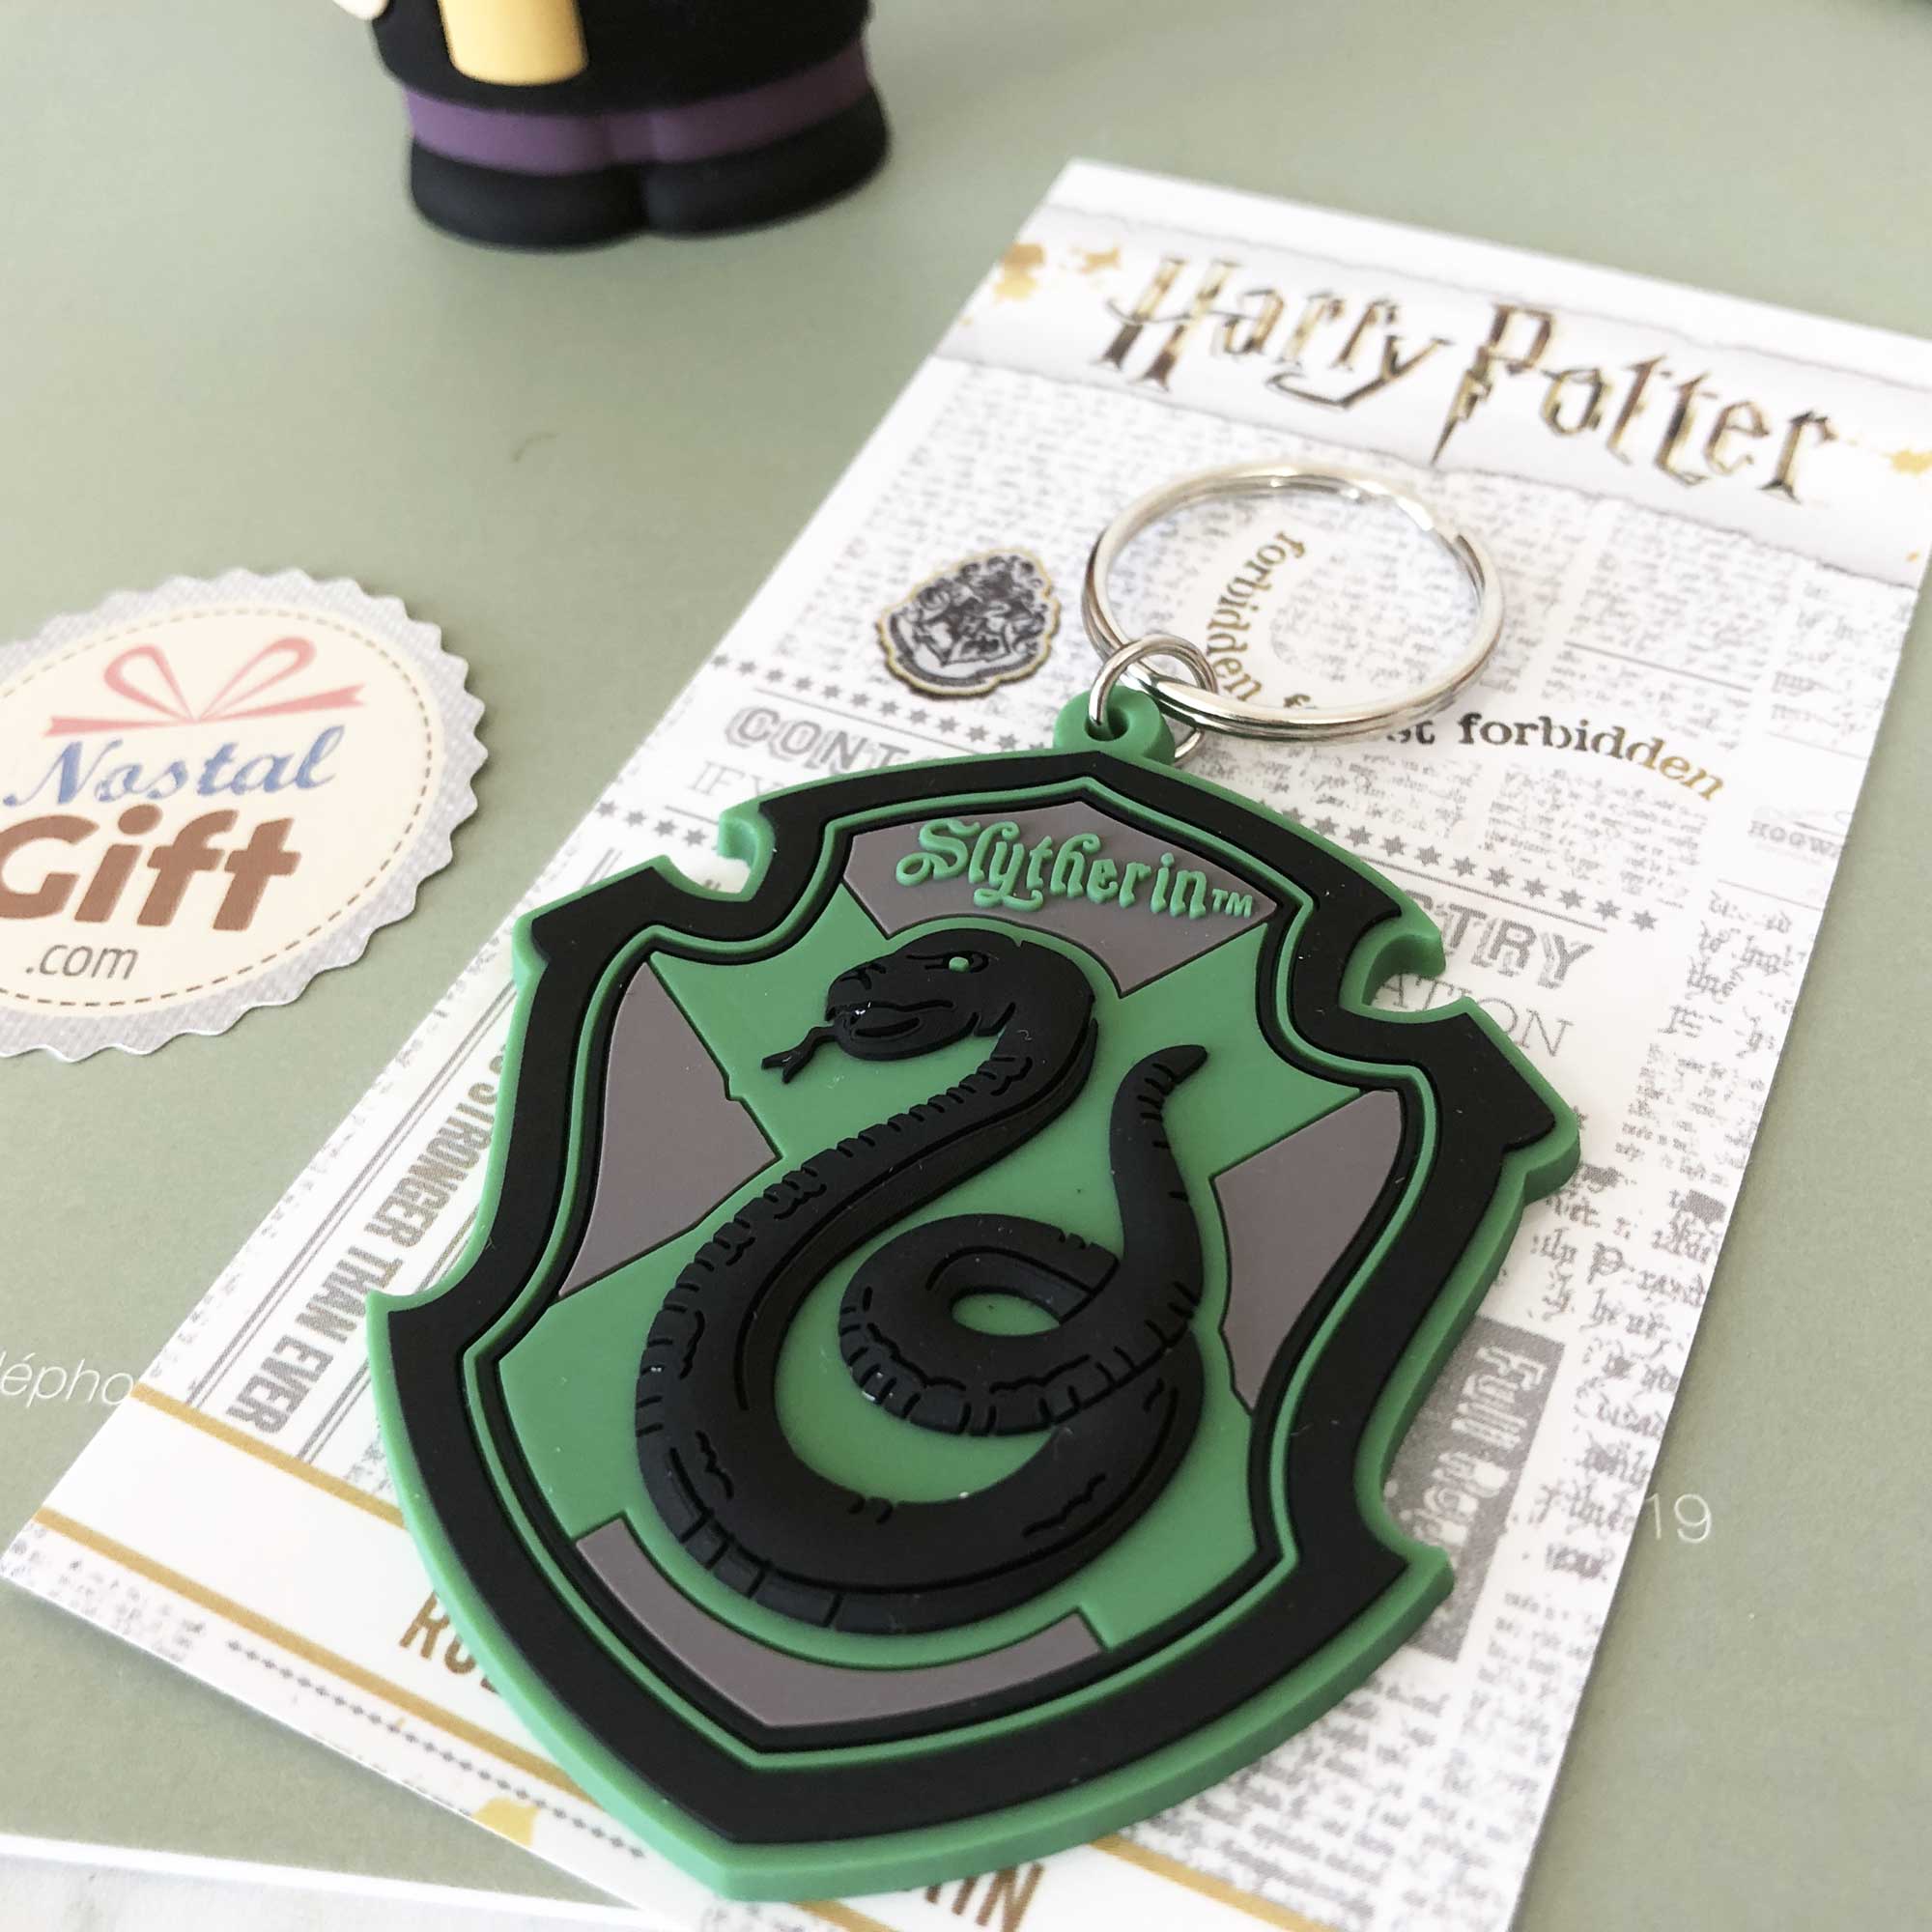 Harry Potter Keychain Pendentif Poudlard École Porte-clés Cadeau d' anniversaire Multi-couleur Facultatif